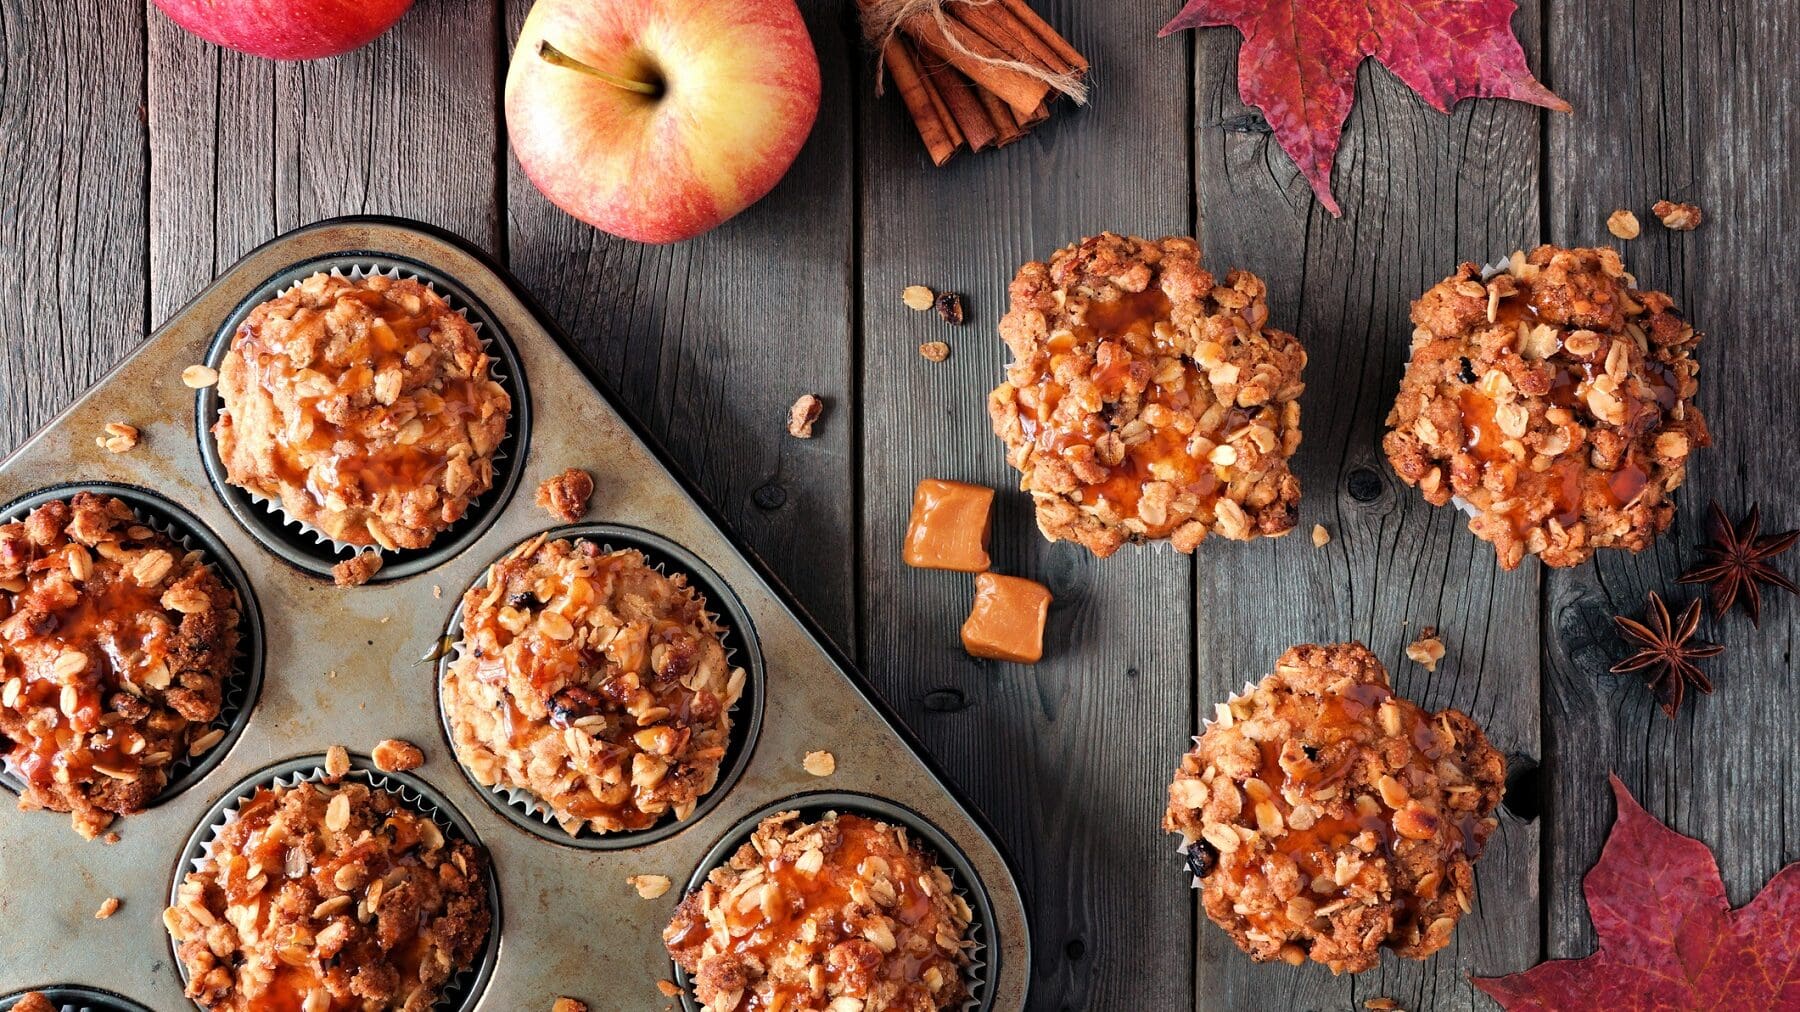 Drei Apfel-Karamell-Streusel-Muffins liegen auf einem grauen Holztisch. Neben ihnen steht eine Muffinform mit weiteren Muffins. Auf dem Tisch verteilt liegen Caramelwürfel, Haferflocken, Äpfel und Zimtstangen.